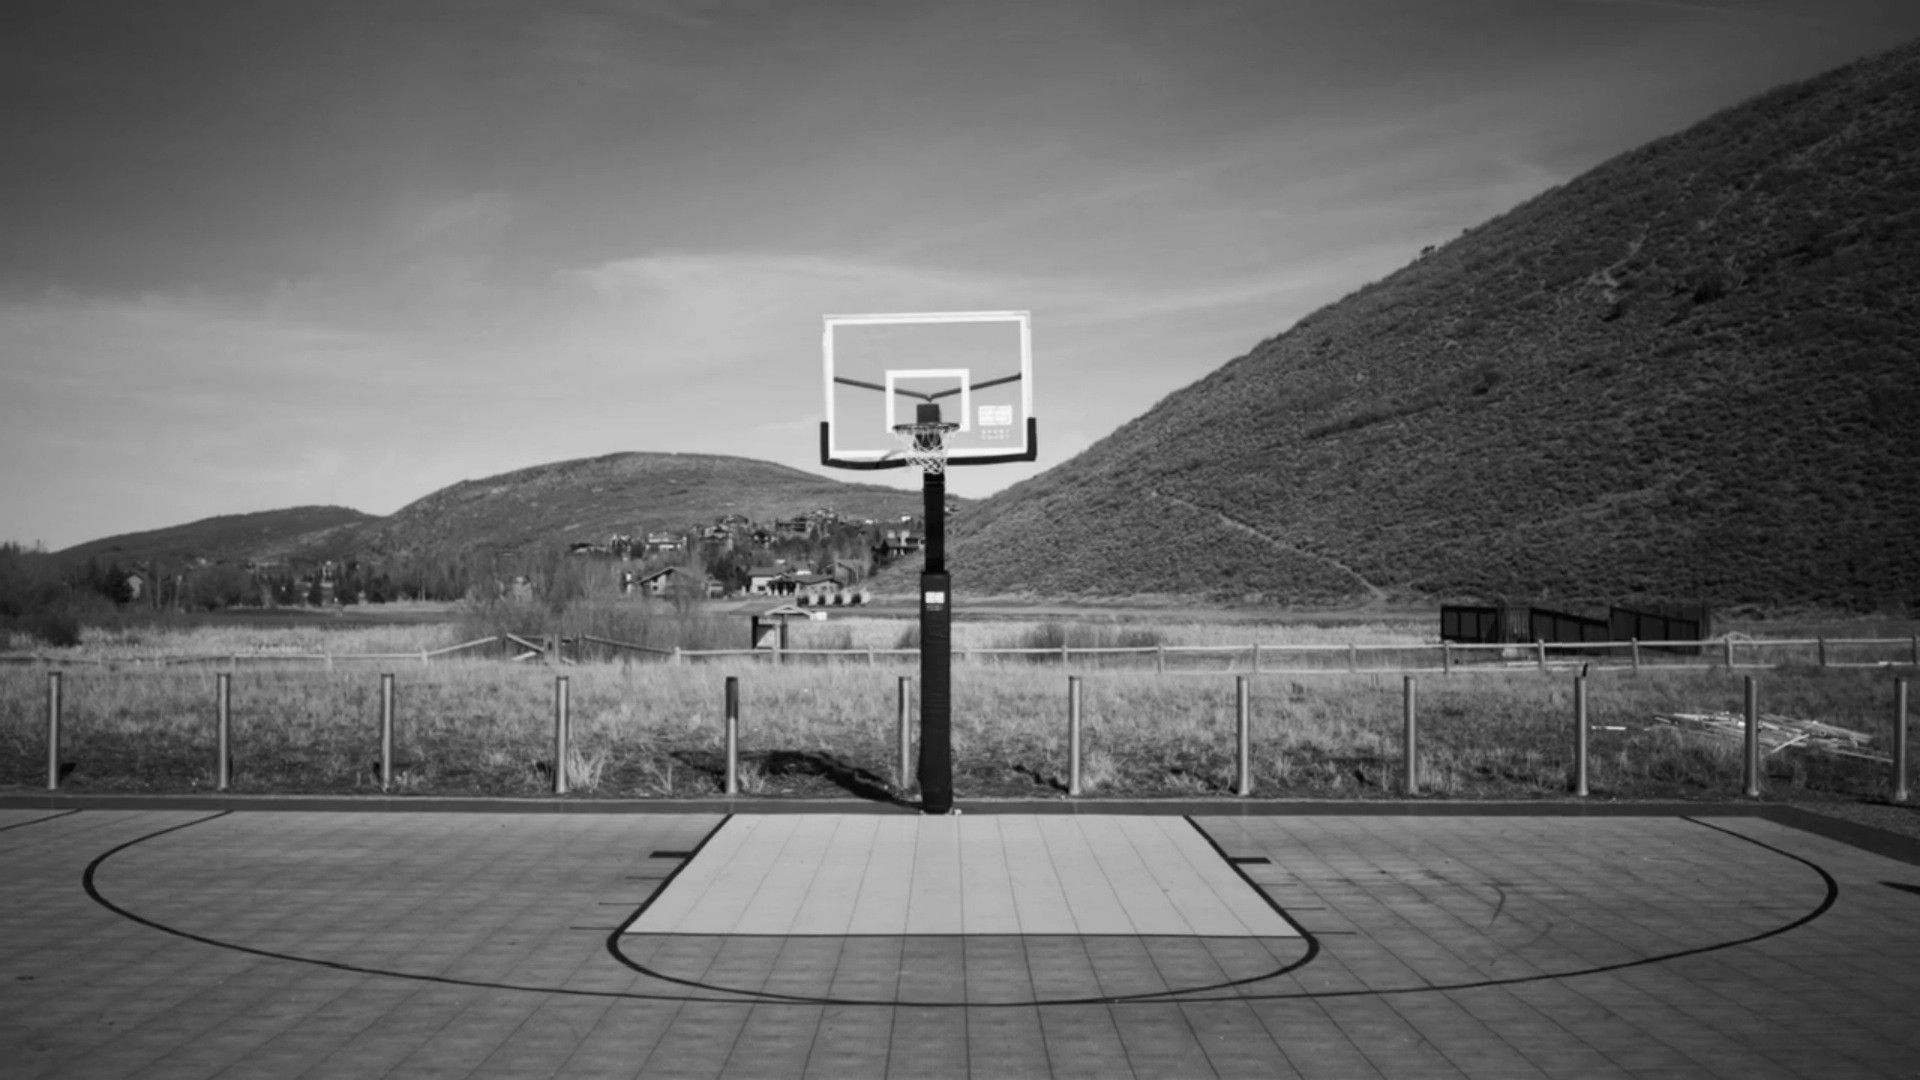 Street Basketball Court Background - HD Wallpaper 